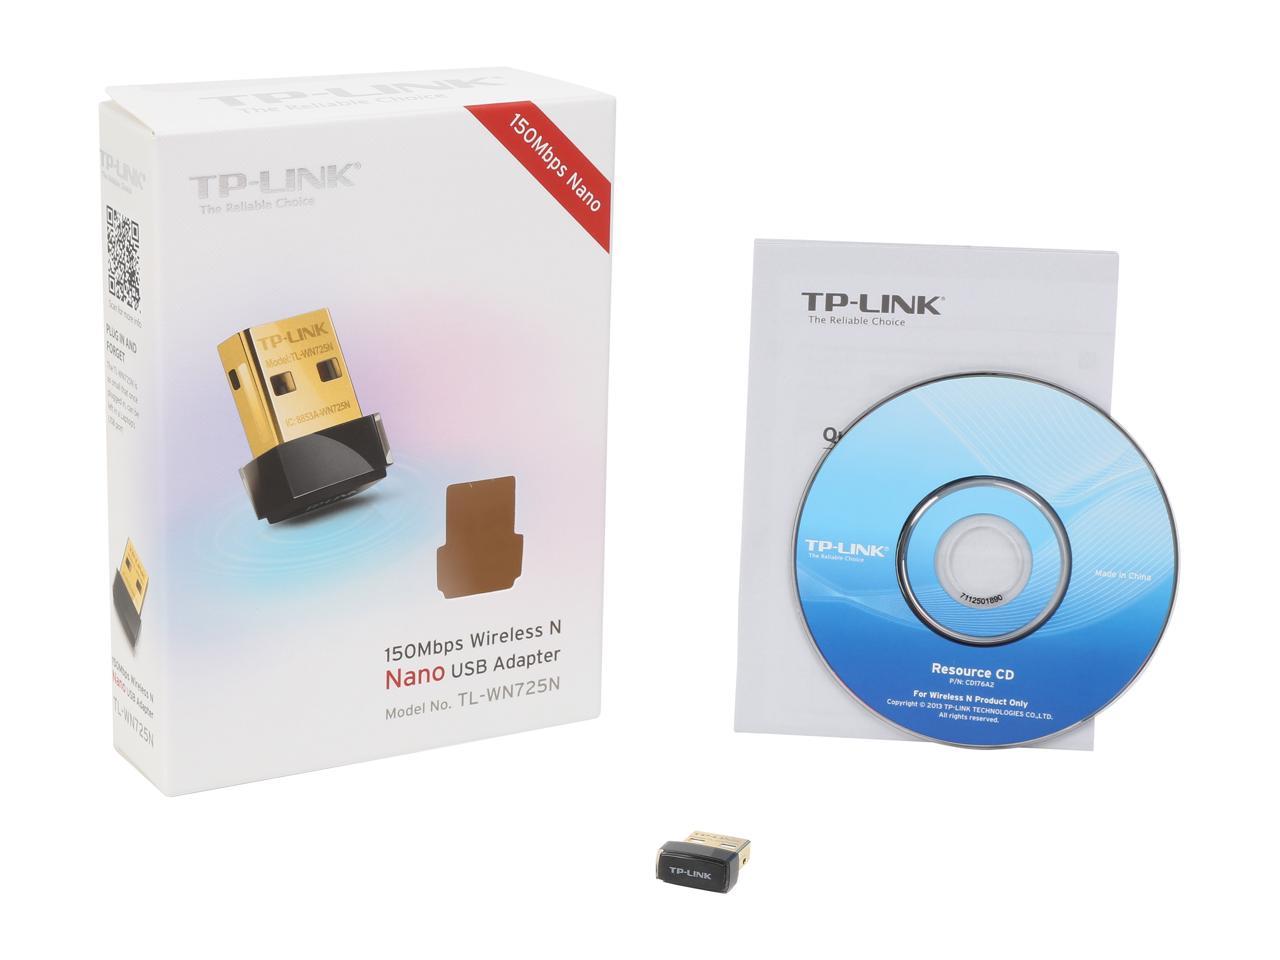 TP-LINK TL-WN725N Nano Wireless N150 Adapter, 150Mbps, IEEE 802.11b/g/n, WEP, WPA / WPA2, Plug & Play in Windows 10 (32 bit & 64 bit) - image 5 of 5